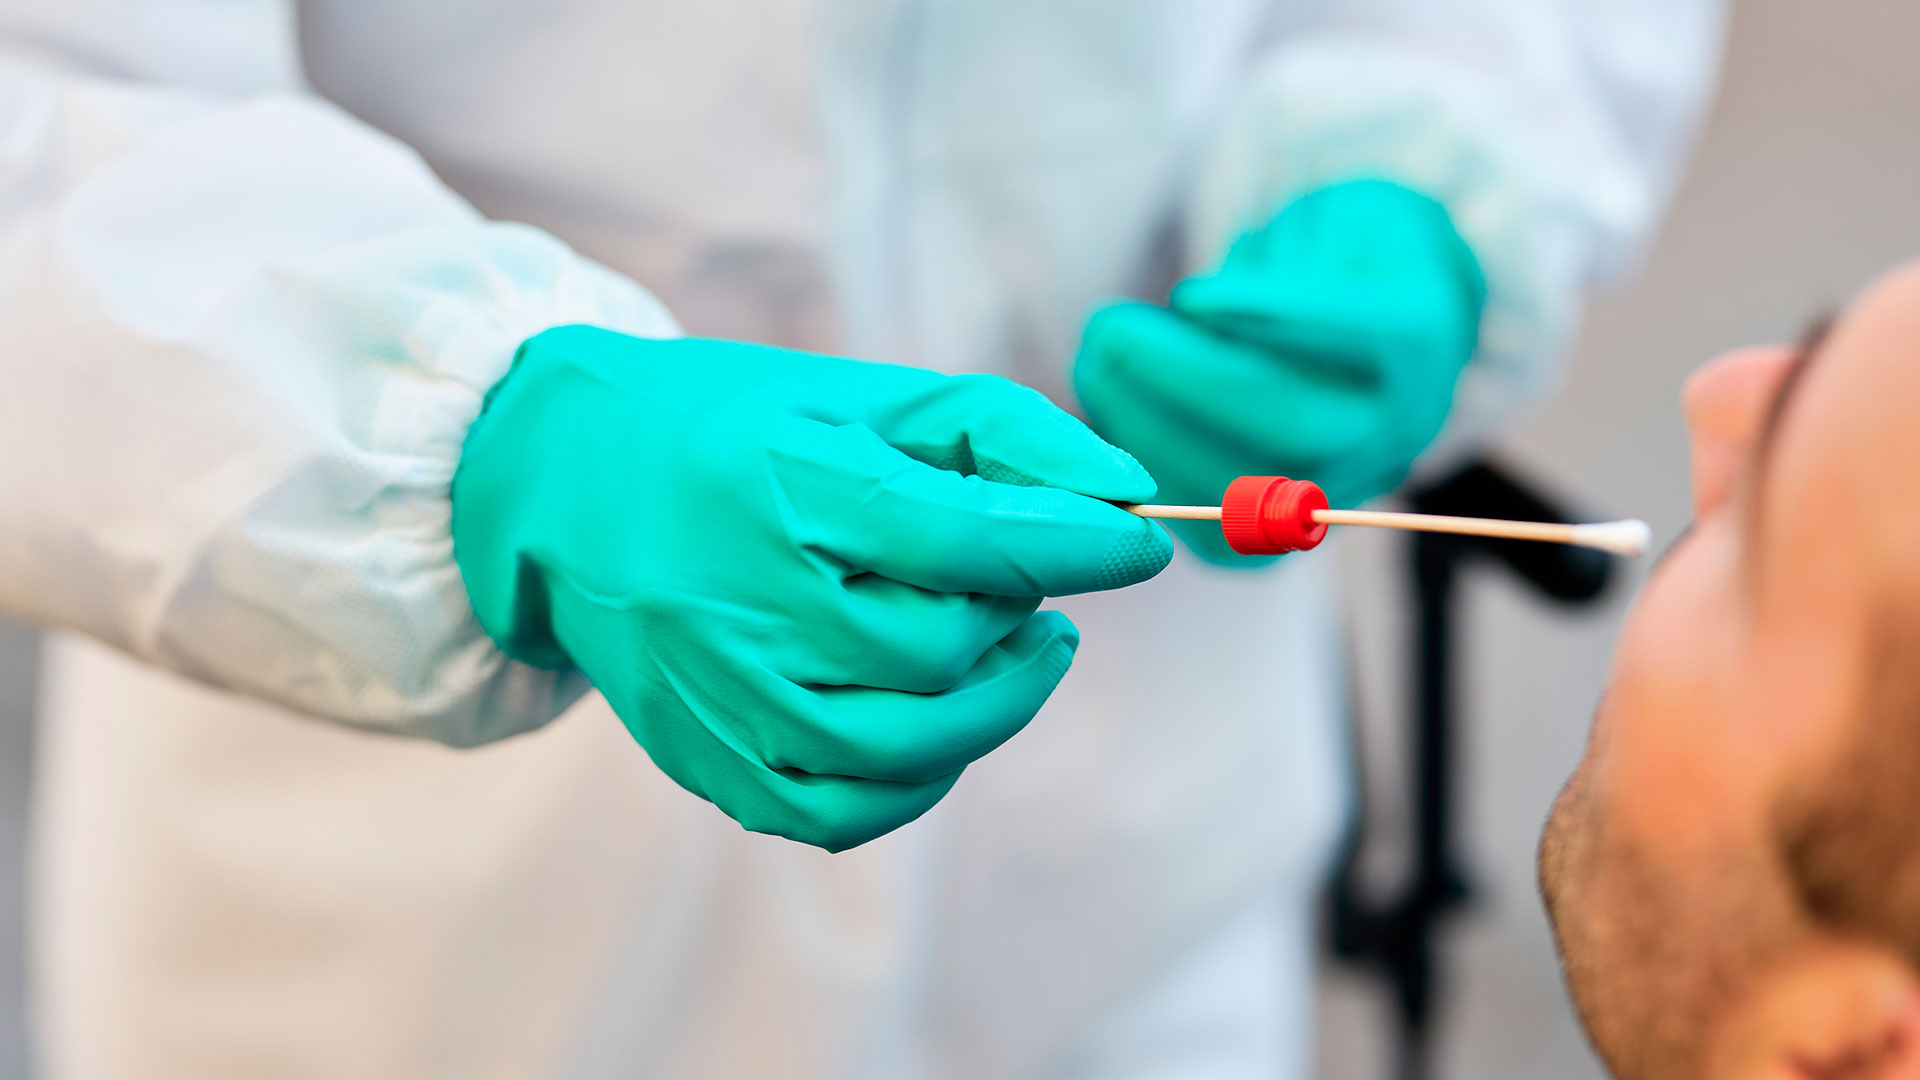 La técnica de PCR se volvió "la" herramienta por excelencia para diagnosticar casos de coronavirus, y sobre la base de sus resultados definir políticas sanitarias en todo el mundo (Shutterstock)